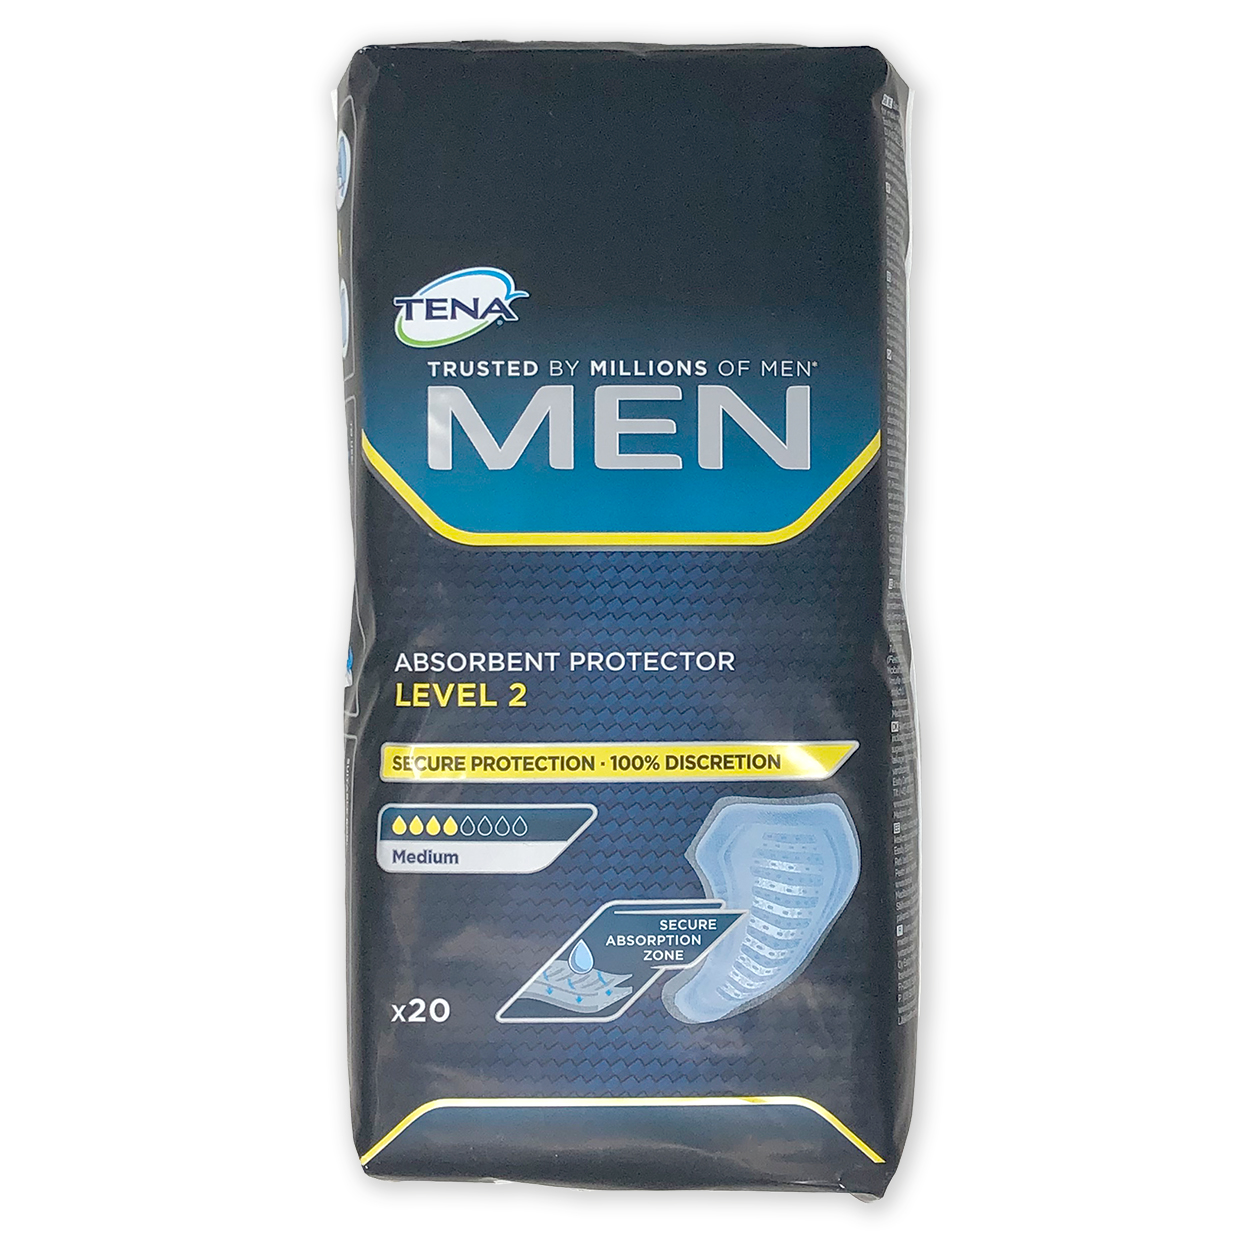 TENA MEN Level 2 Inkontinenzeinlagen - Packung à 20 Stück